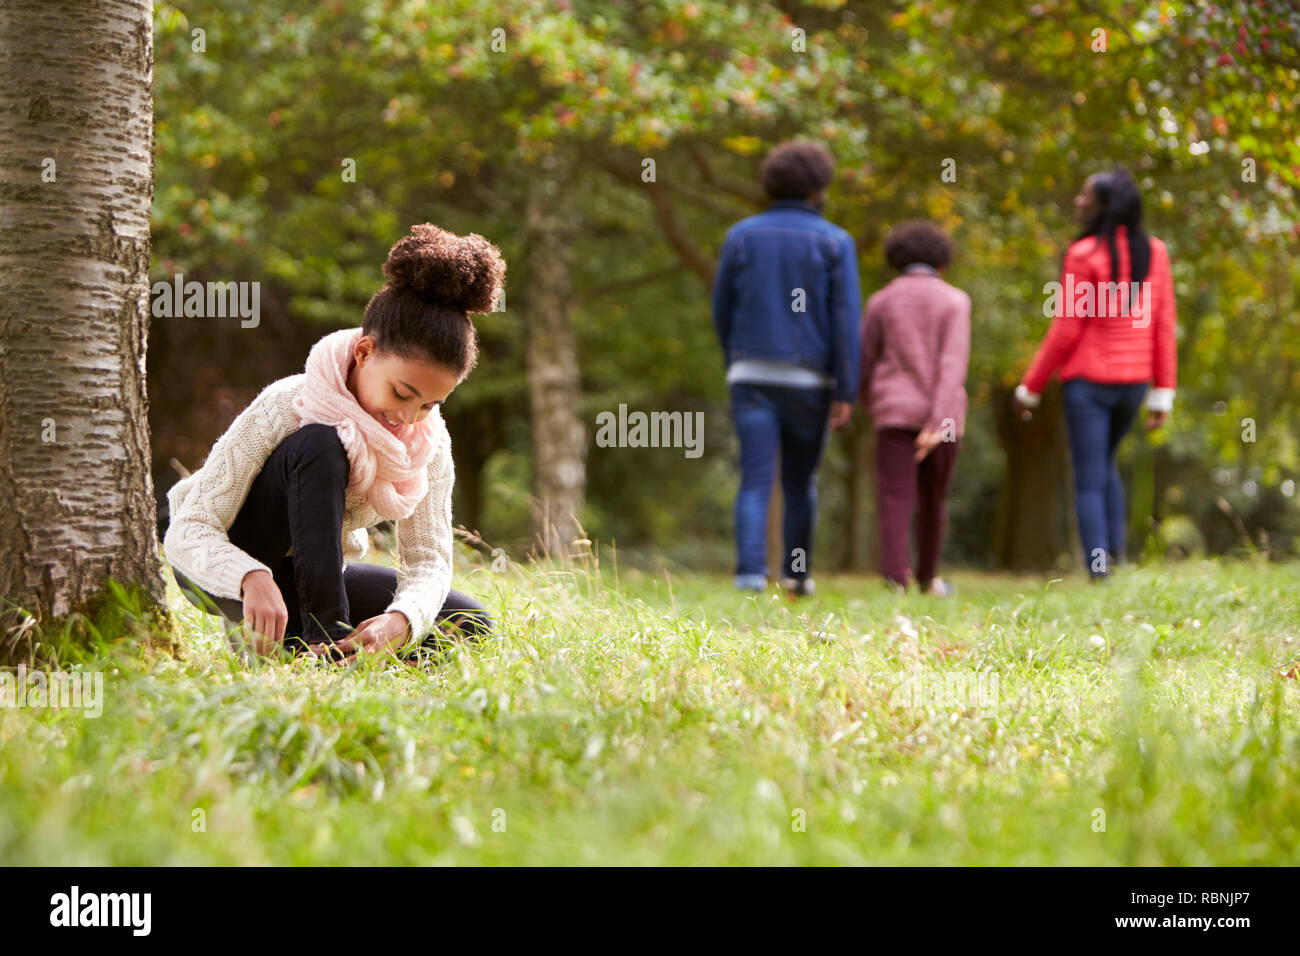 Mixed Race girl à genoux dans le parc pour attacher sa chaussure, sa famille balade dans l'arrière-plan, low angle Banque D'Images